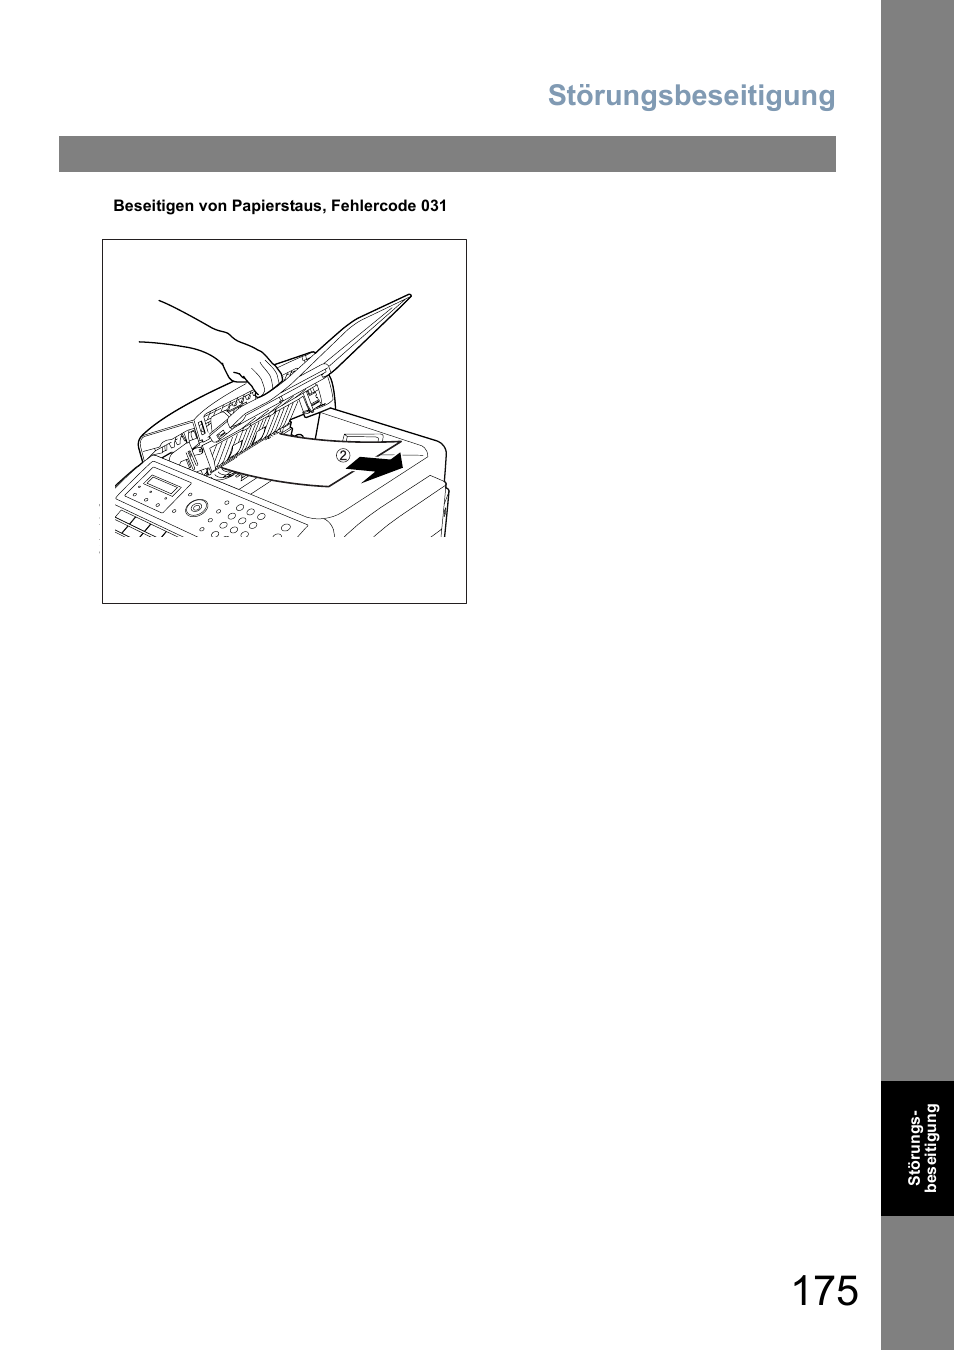 Störungsbeseitigung | Panasonic UF5600 Benutzerhandbuch | Seite 175 / 200